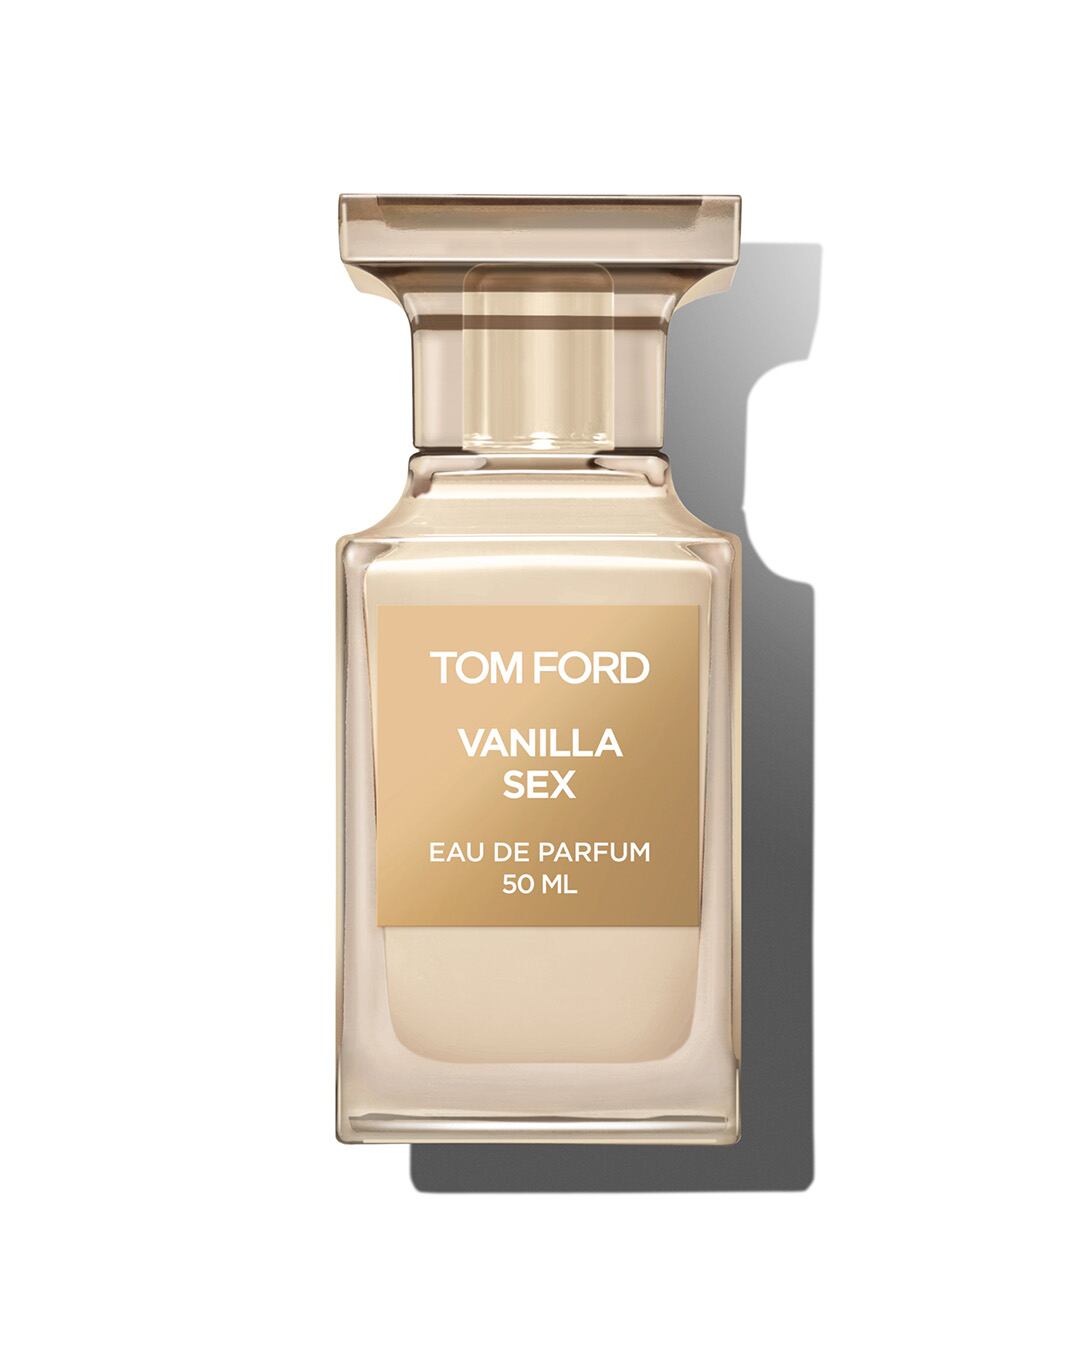 Vanilla Sex, de Tom Ford.